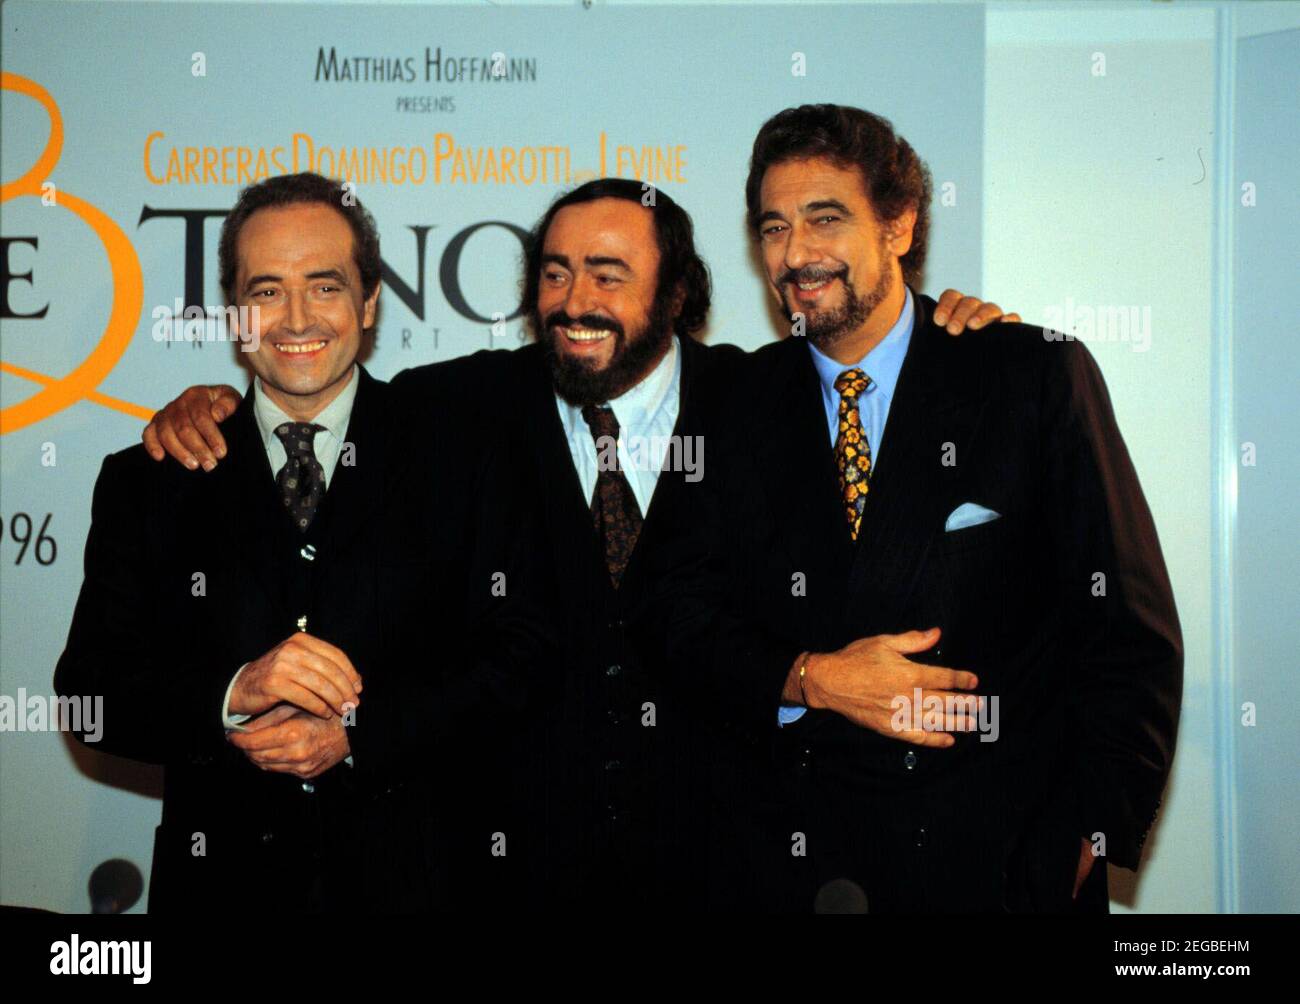 DIE DREI TENÖRE, 1996, Jose Carreras, Luciano Pavarotti, Placido Domingo. THE THREE TENORS, 1996, Spanish Tenor Jose Carreras, Italian Tenor Luciano Pavarotti and Spanish Tenor Placido Domingo. Stock Photo